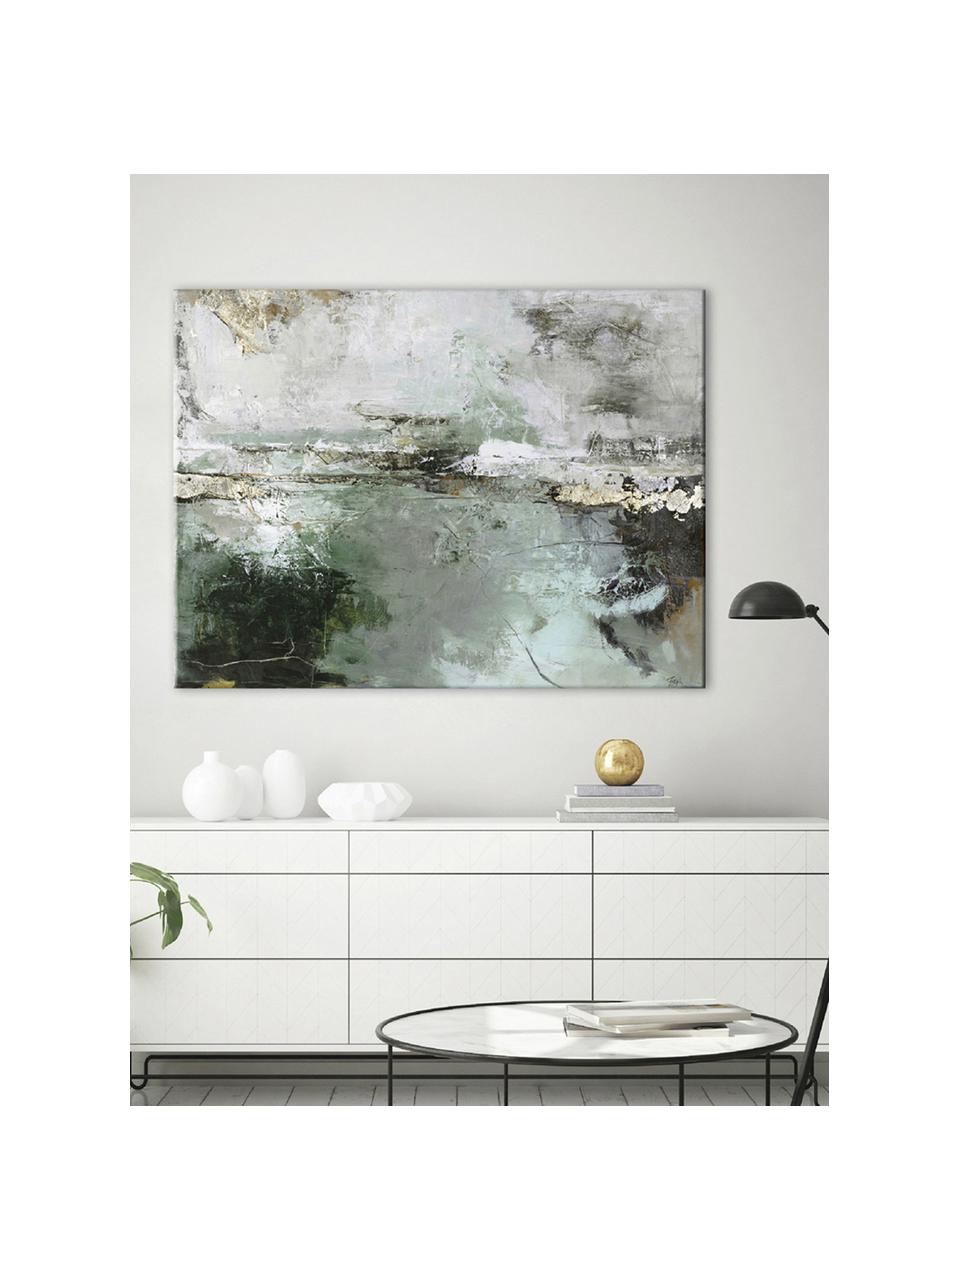 Impression sur toile peinte à la main Hillside, Tons beiges, verts, larg. 120 x haut. 90 cm